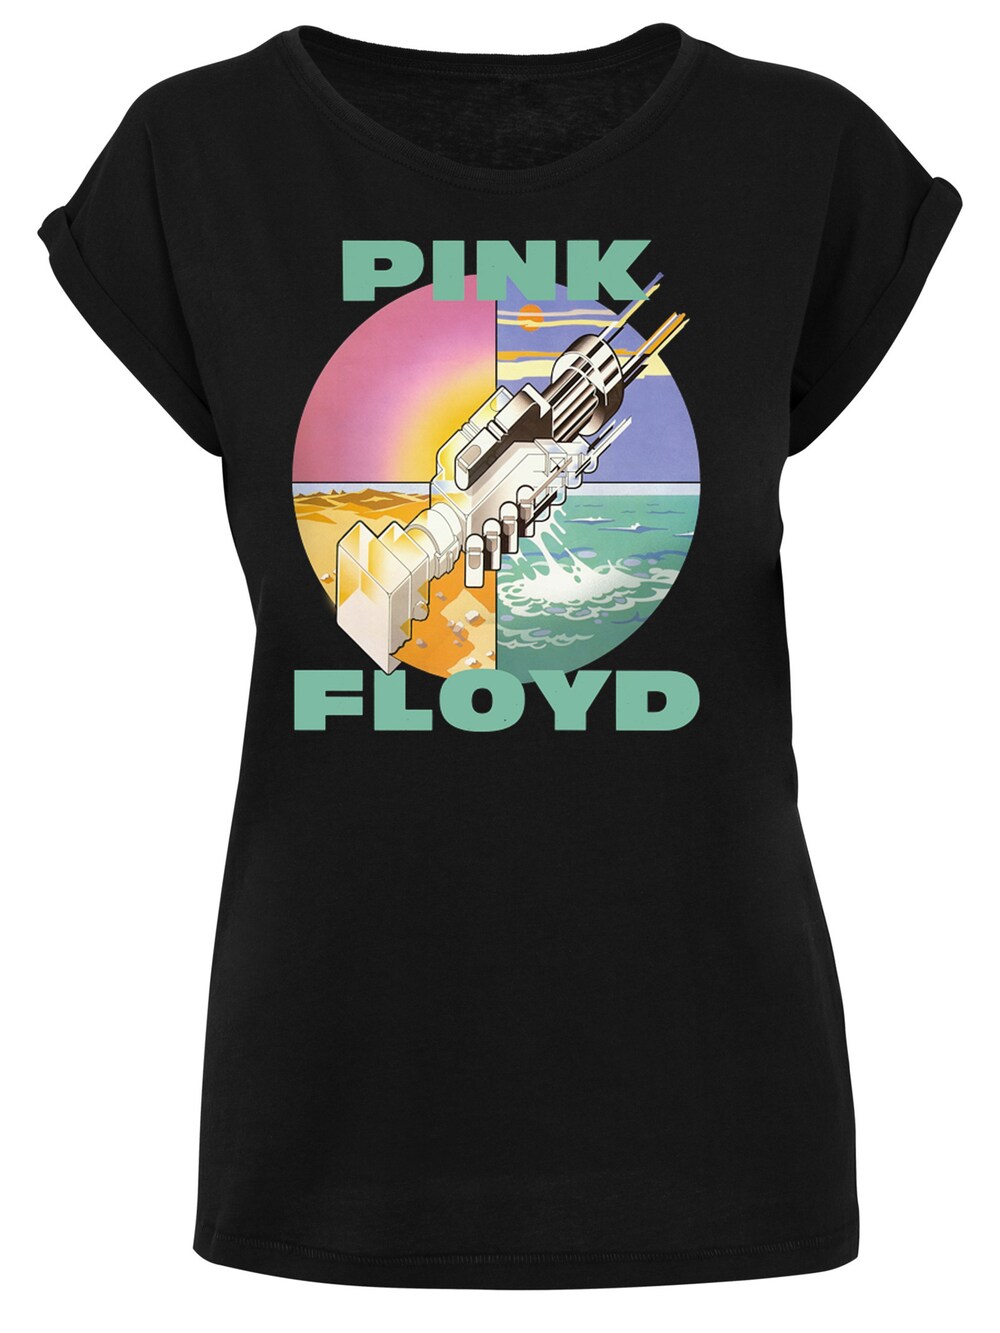 Рубашка F4Nt4Stic Pink Floyd Wish You Were Here, черный pink floyd wish you were here lp конверты внутренние coex для грампластинок 12 25шт набор